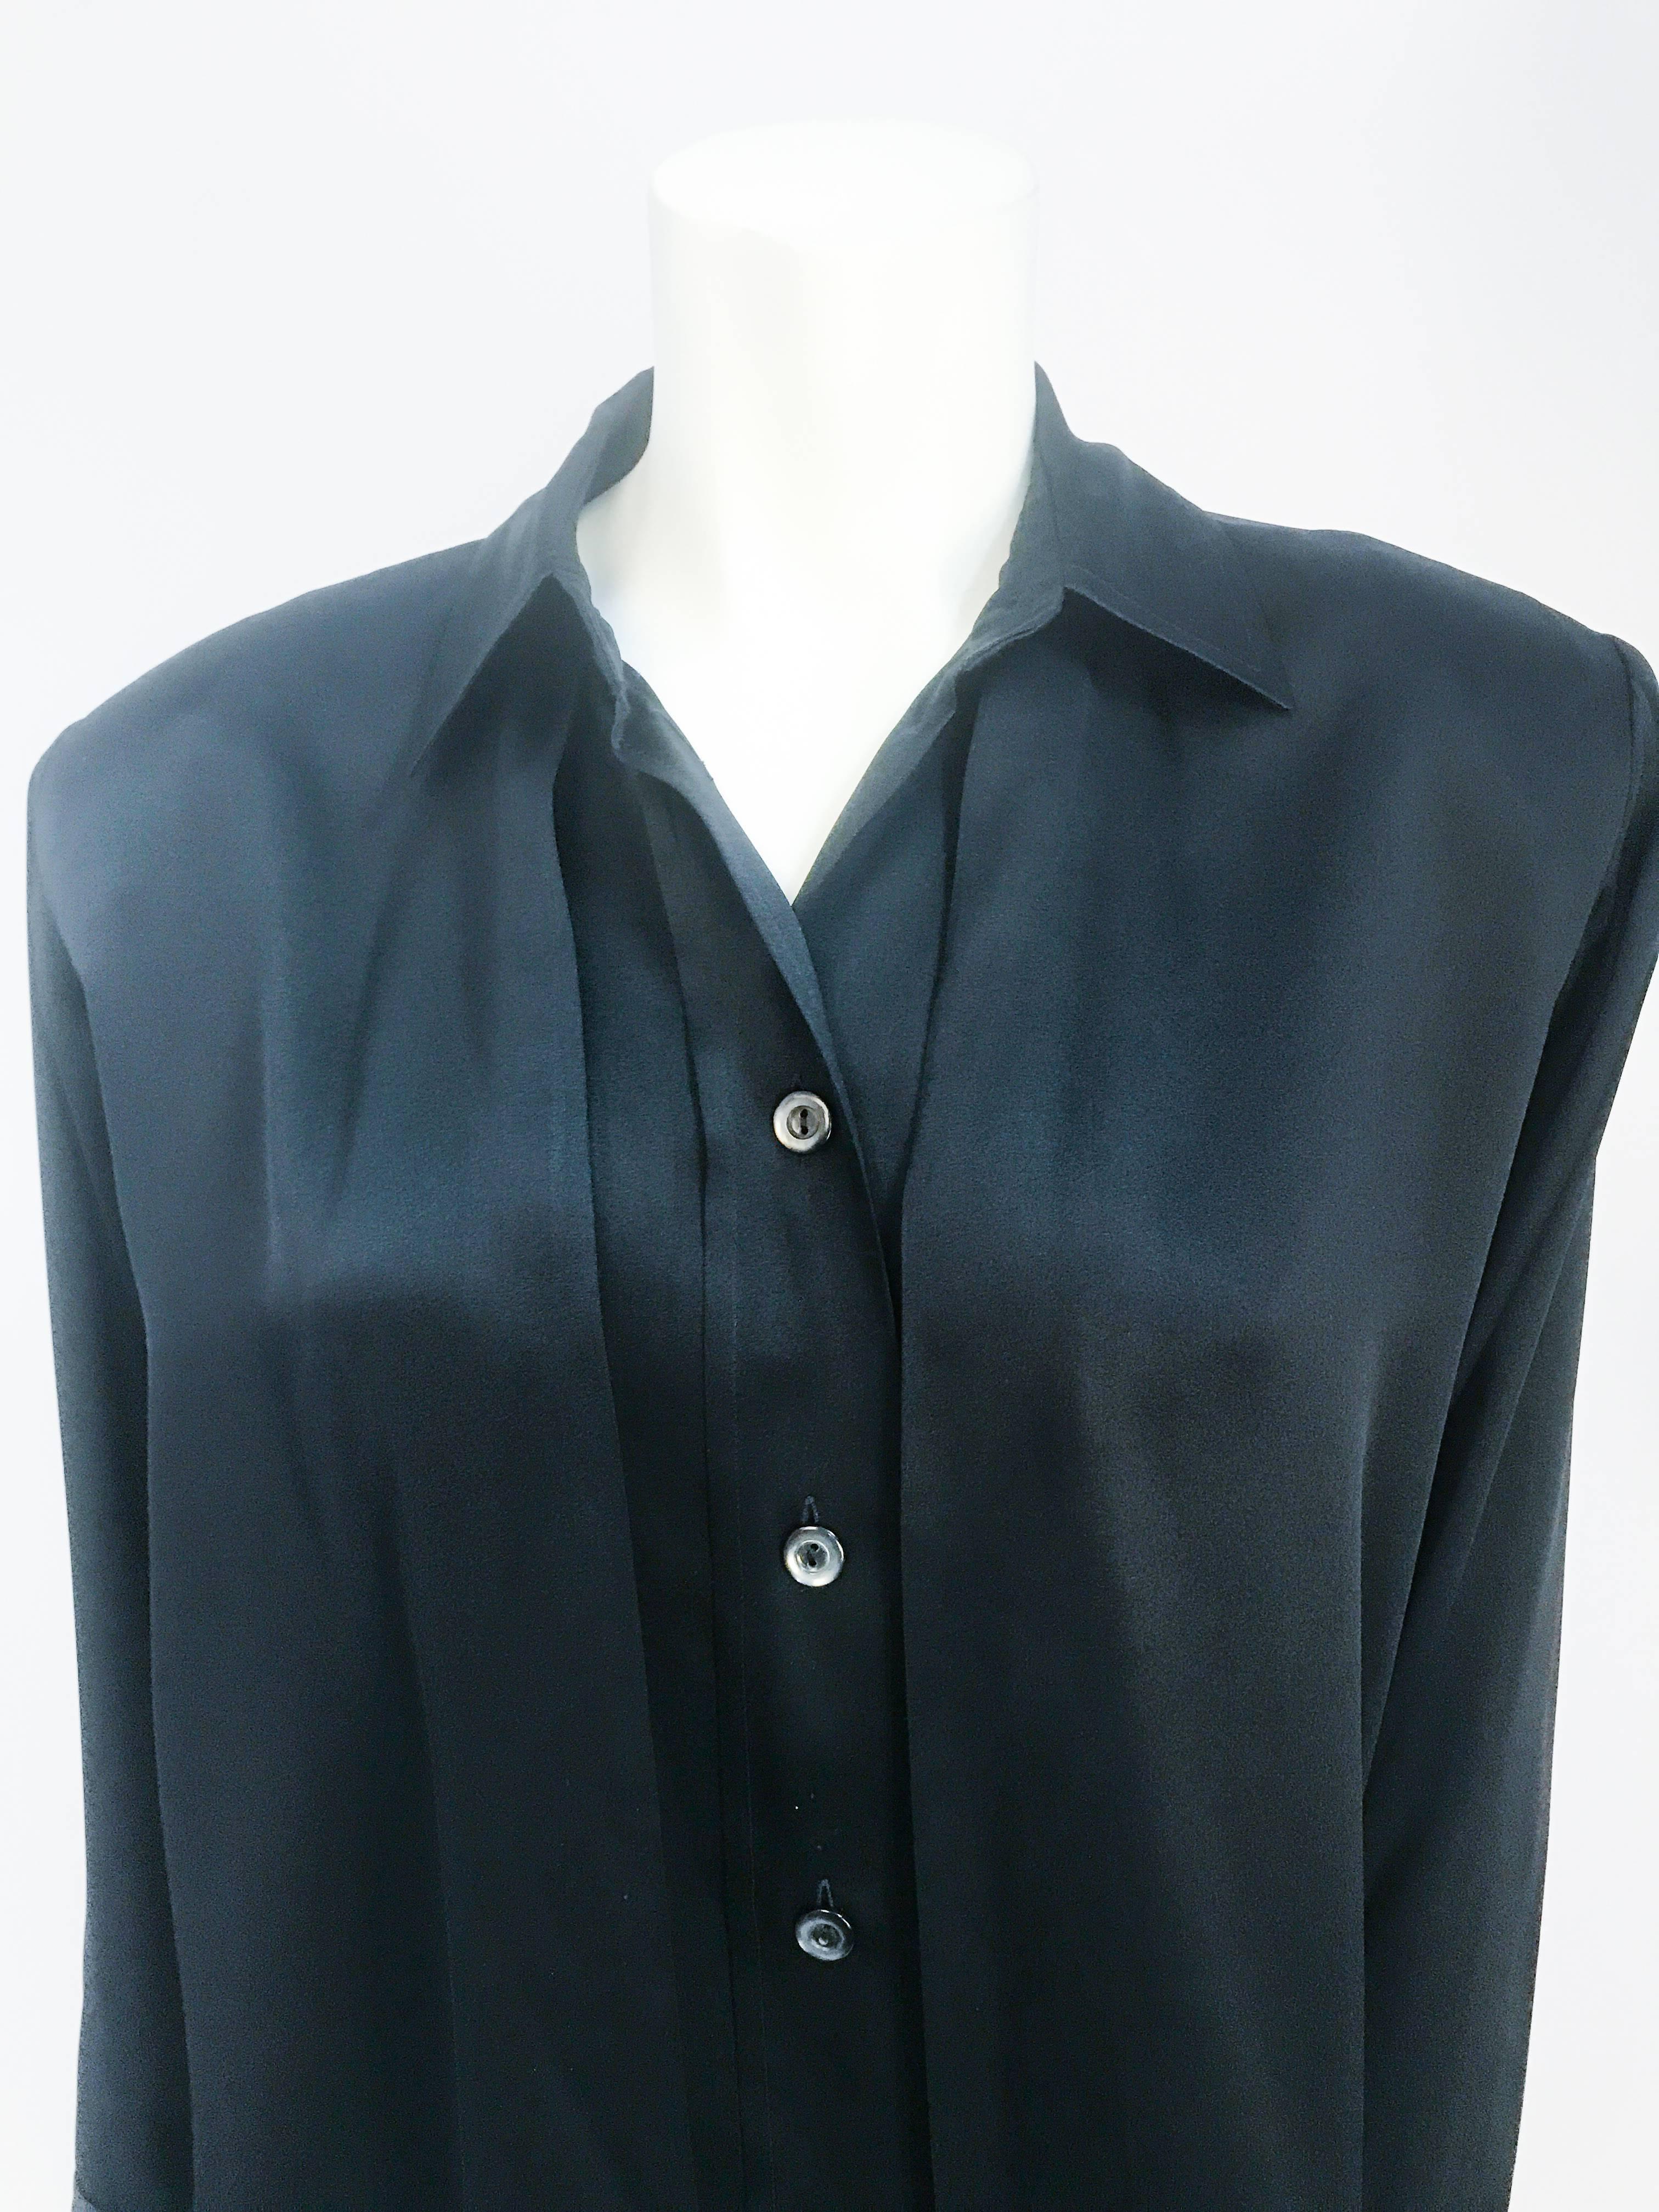 Women's Yves Saint Laurent Black Silk Blouse, 1980s 